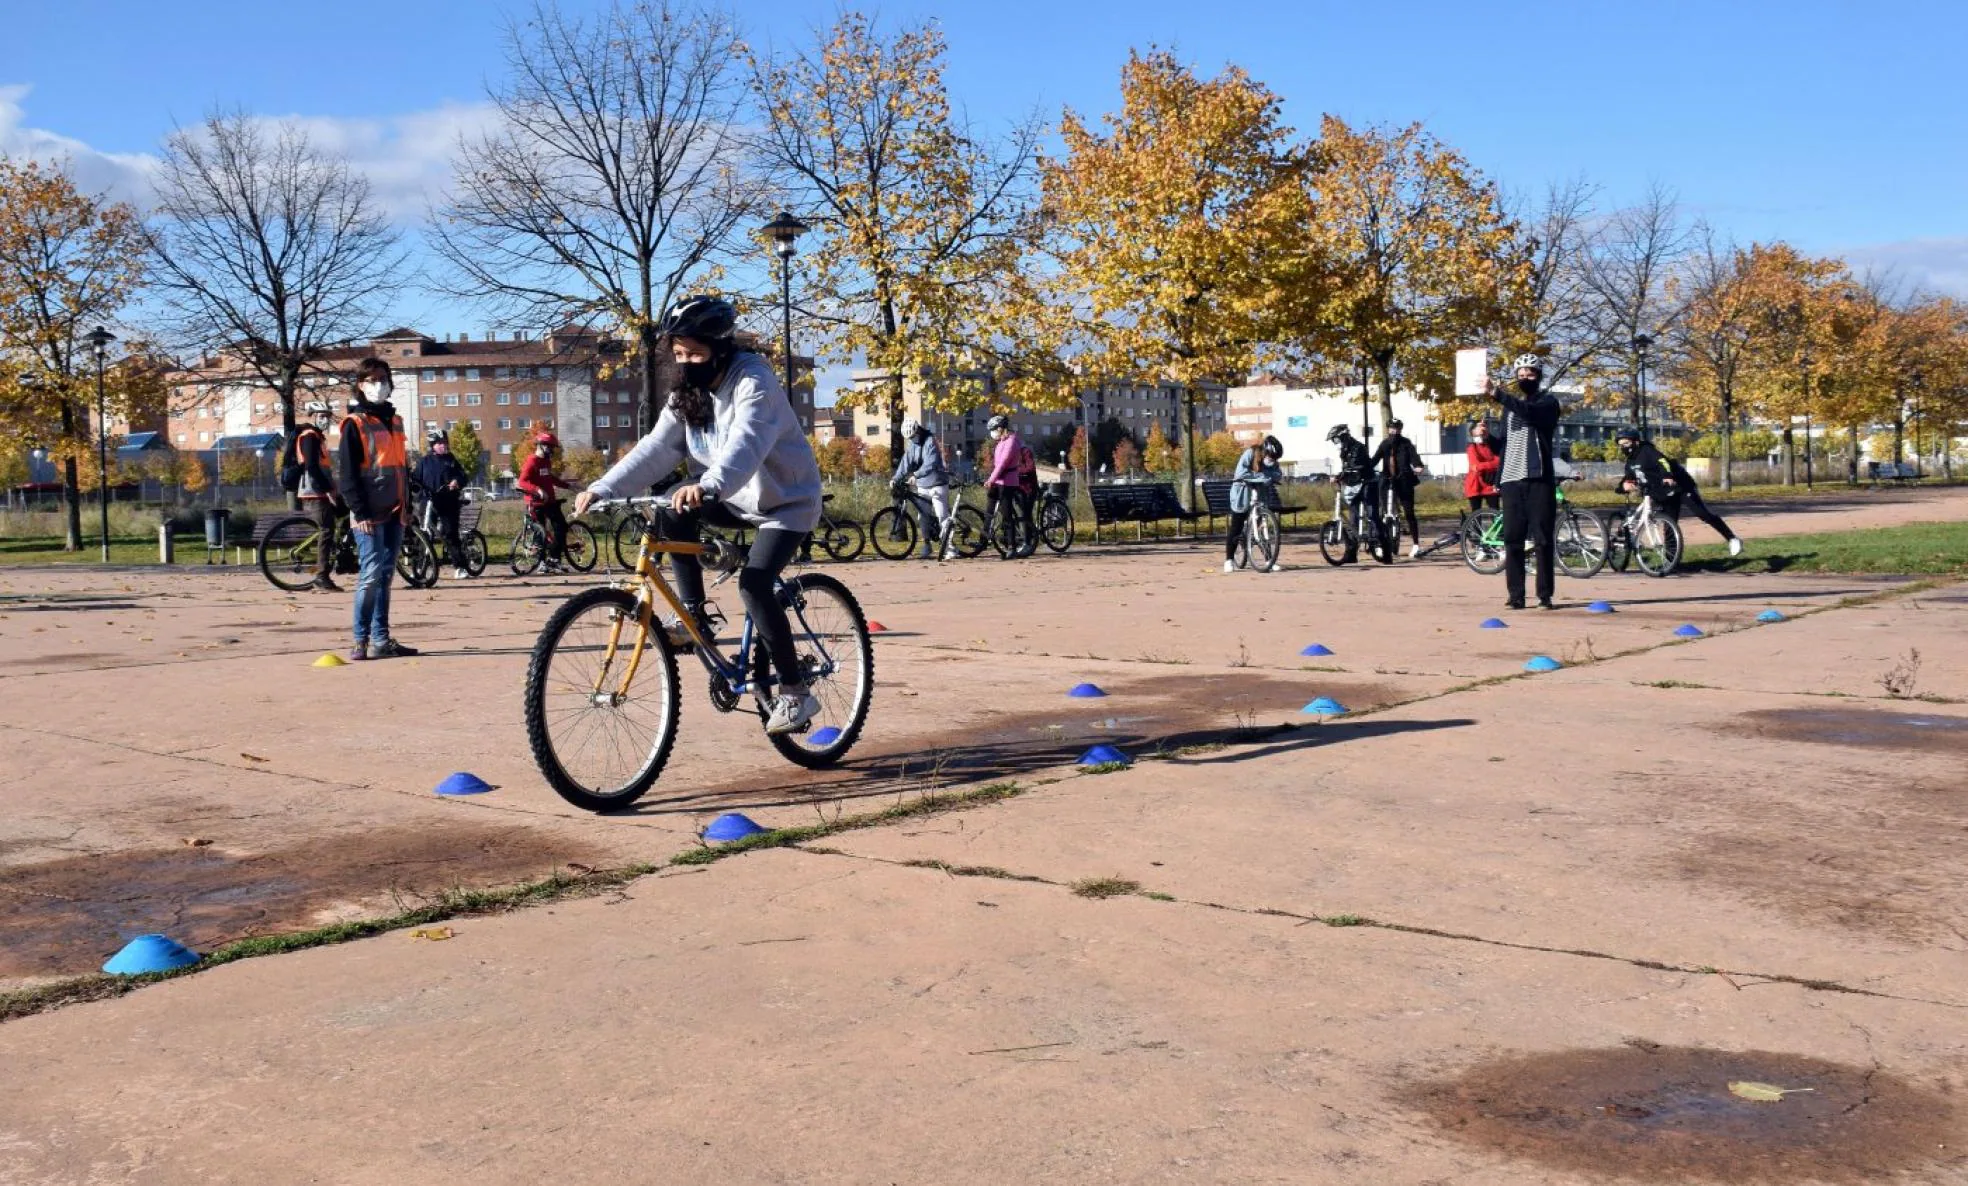 Prácticas de los alumnos en el parque de La Ribera, antes de salir a practicar en el tráfico de la ciudad. 